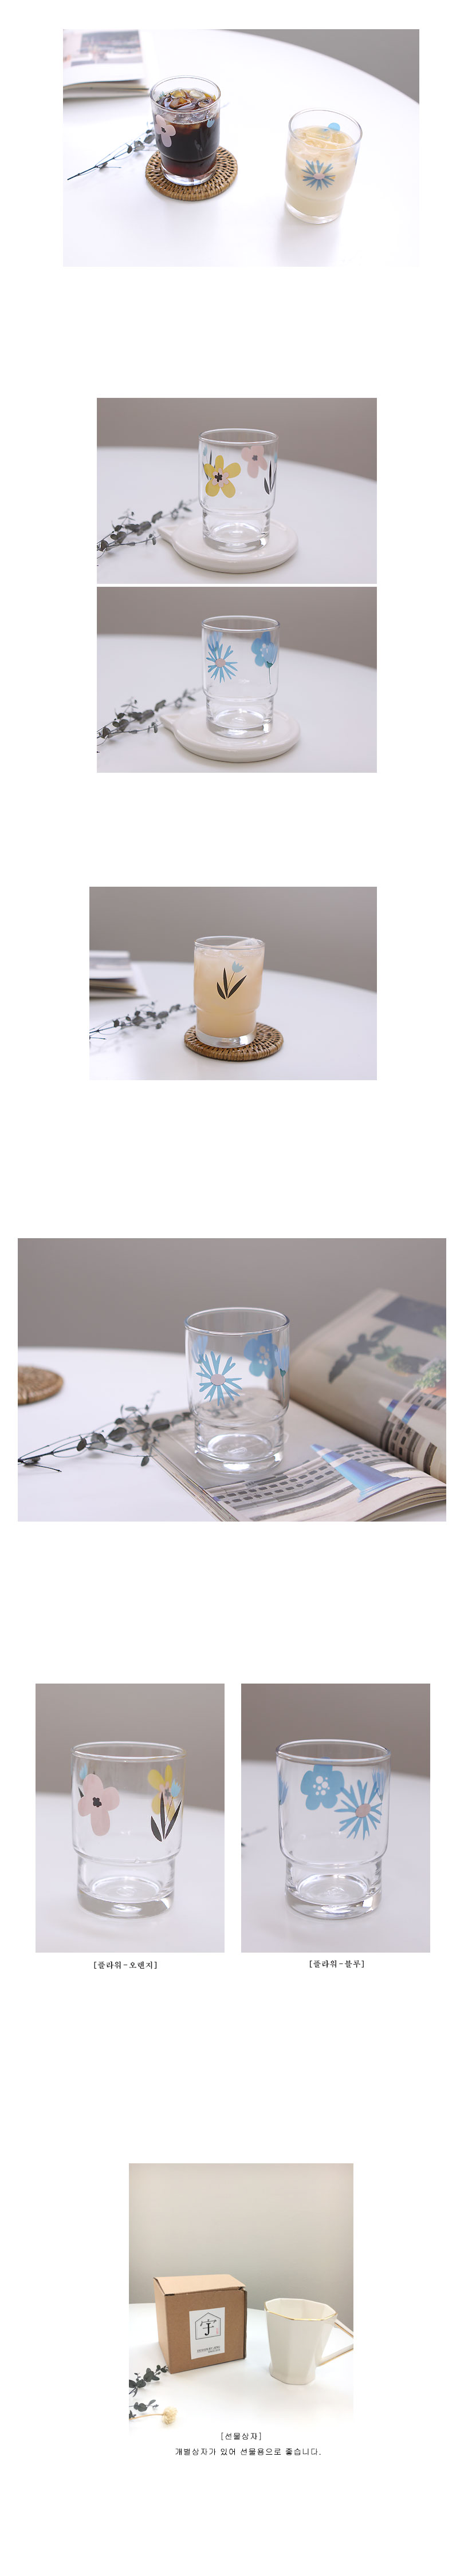 큐티 플라워 유리잔 13,000원 - 젬제이 생활/주방, 주방식기, 유리컵, 투명 바보사랑 큐티 플라워 유리잔 13,000원 - 젬제이 생활/주방, 주방식기, 유리컵, 투명 바보사랑